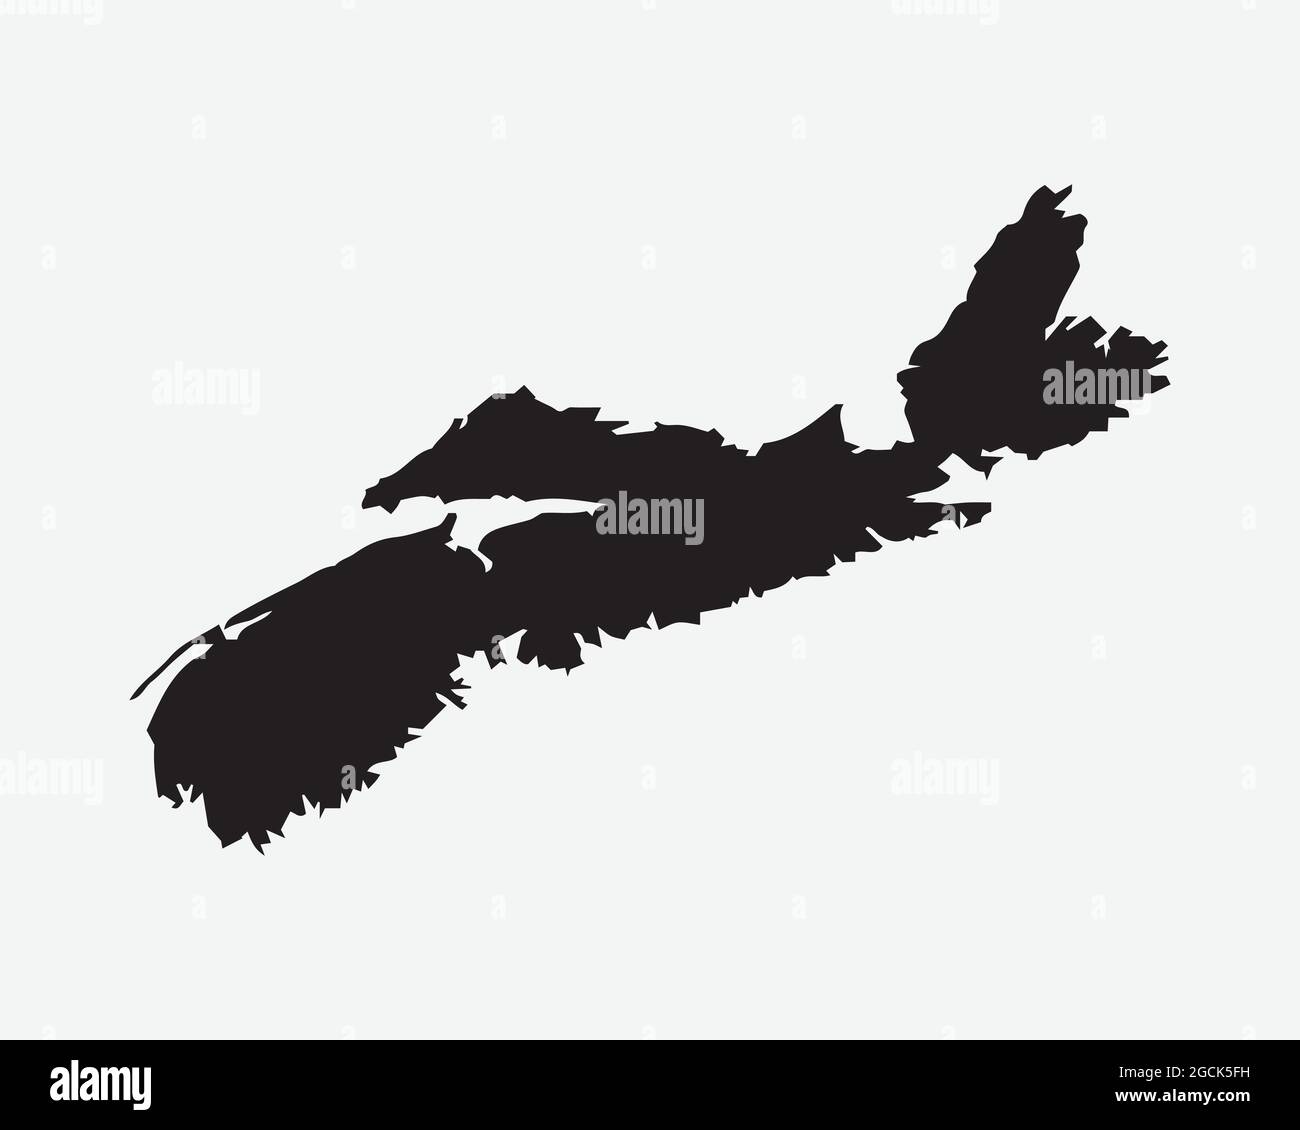 Nouvelle-Écosse Canada carte Silhouette noire. N.-É., province du Canada définir la frontière de l'Atlas géographique. Carte noire isolée sur un arrière-plan blanc. VE. EPS Illustration de Vecteur